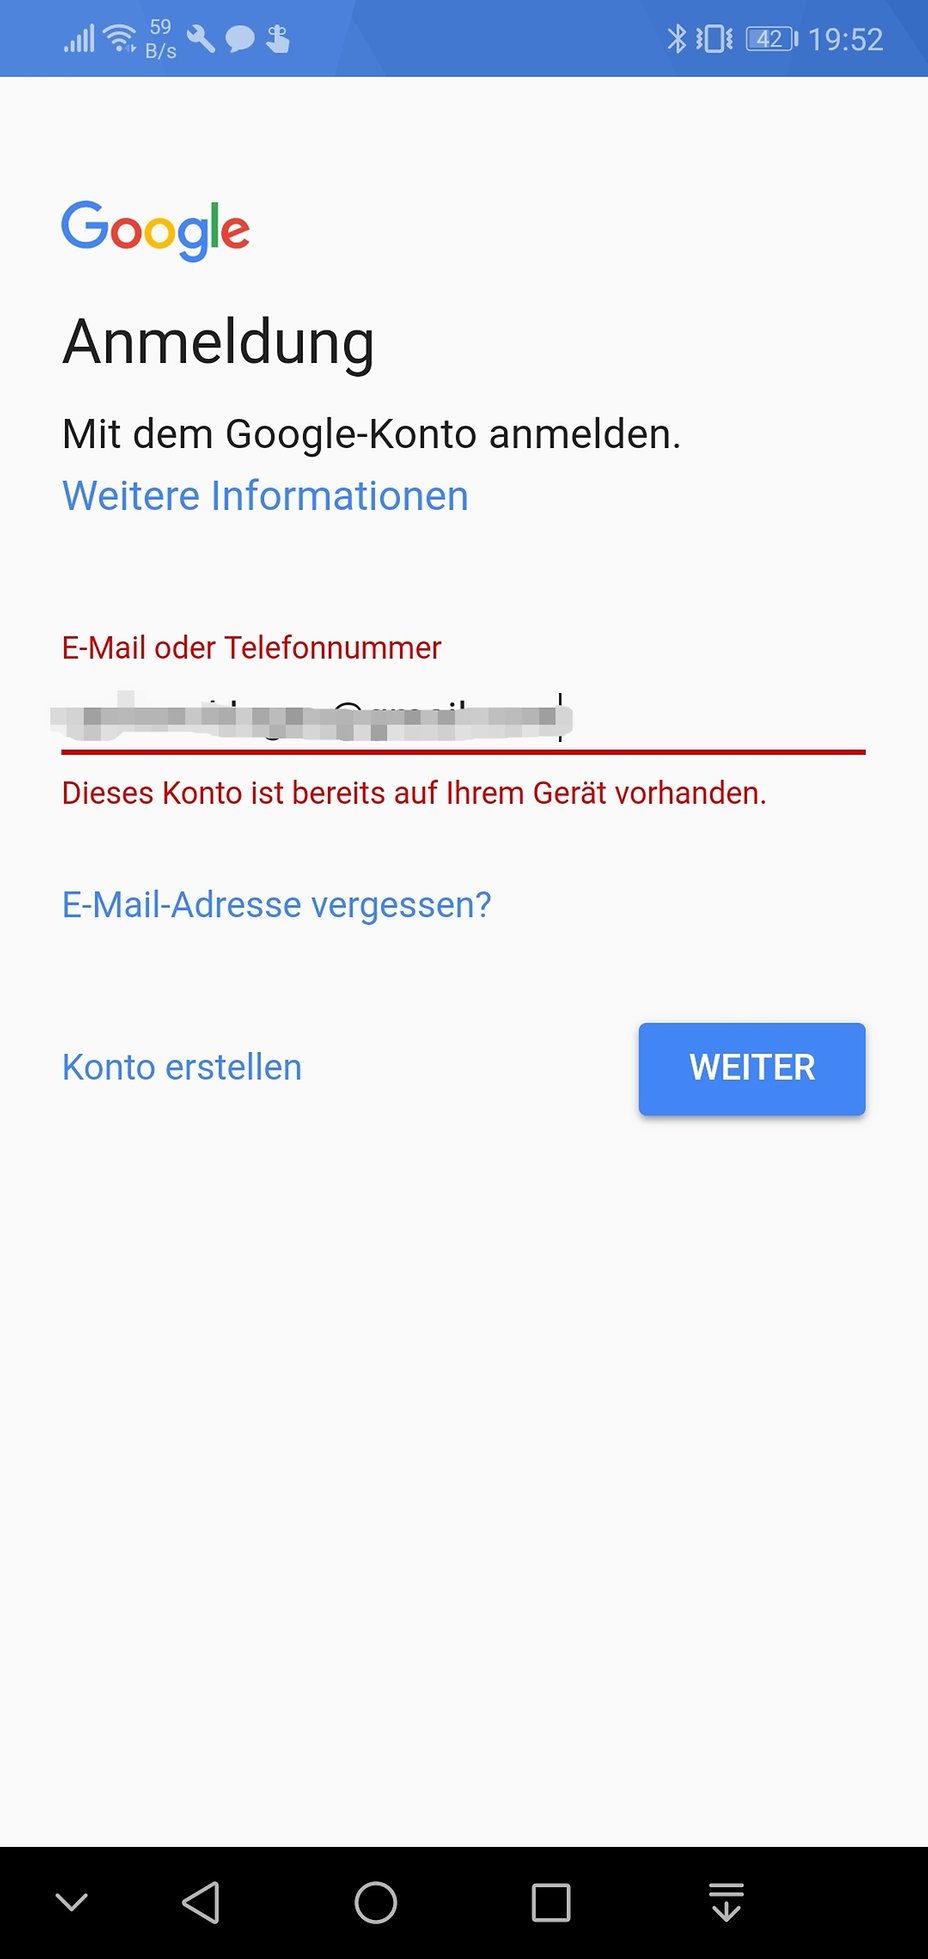 Anmeldung android gmail nicht möglich Android Google